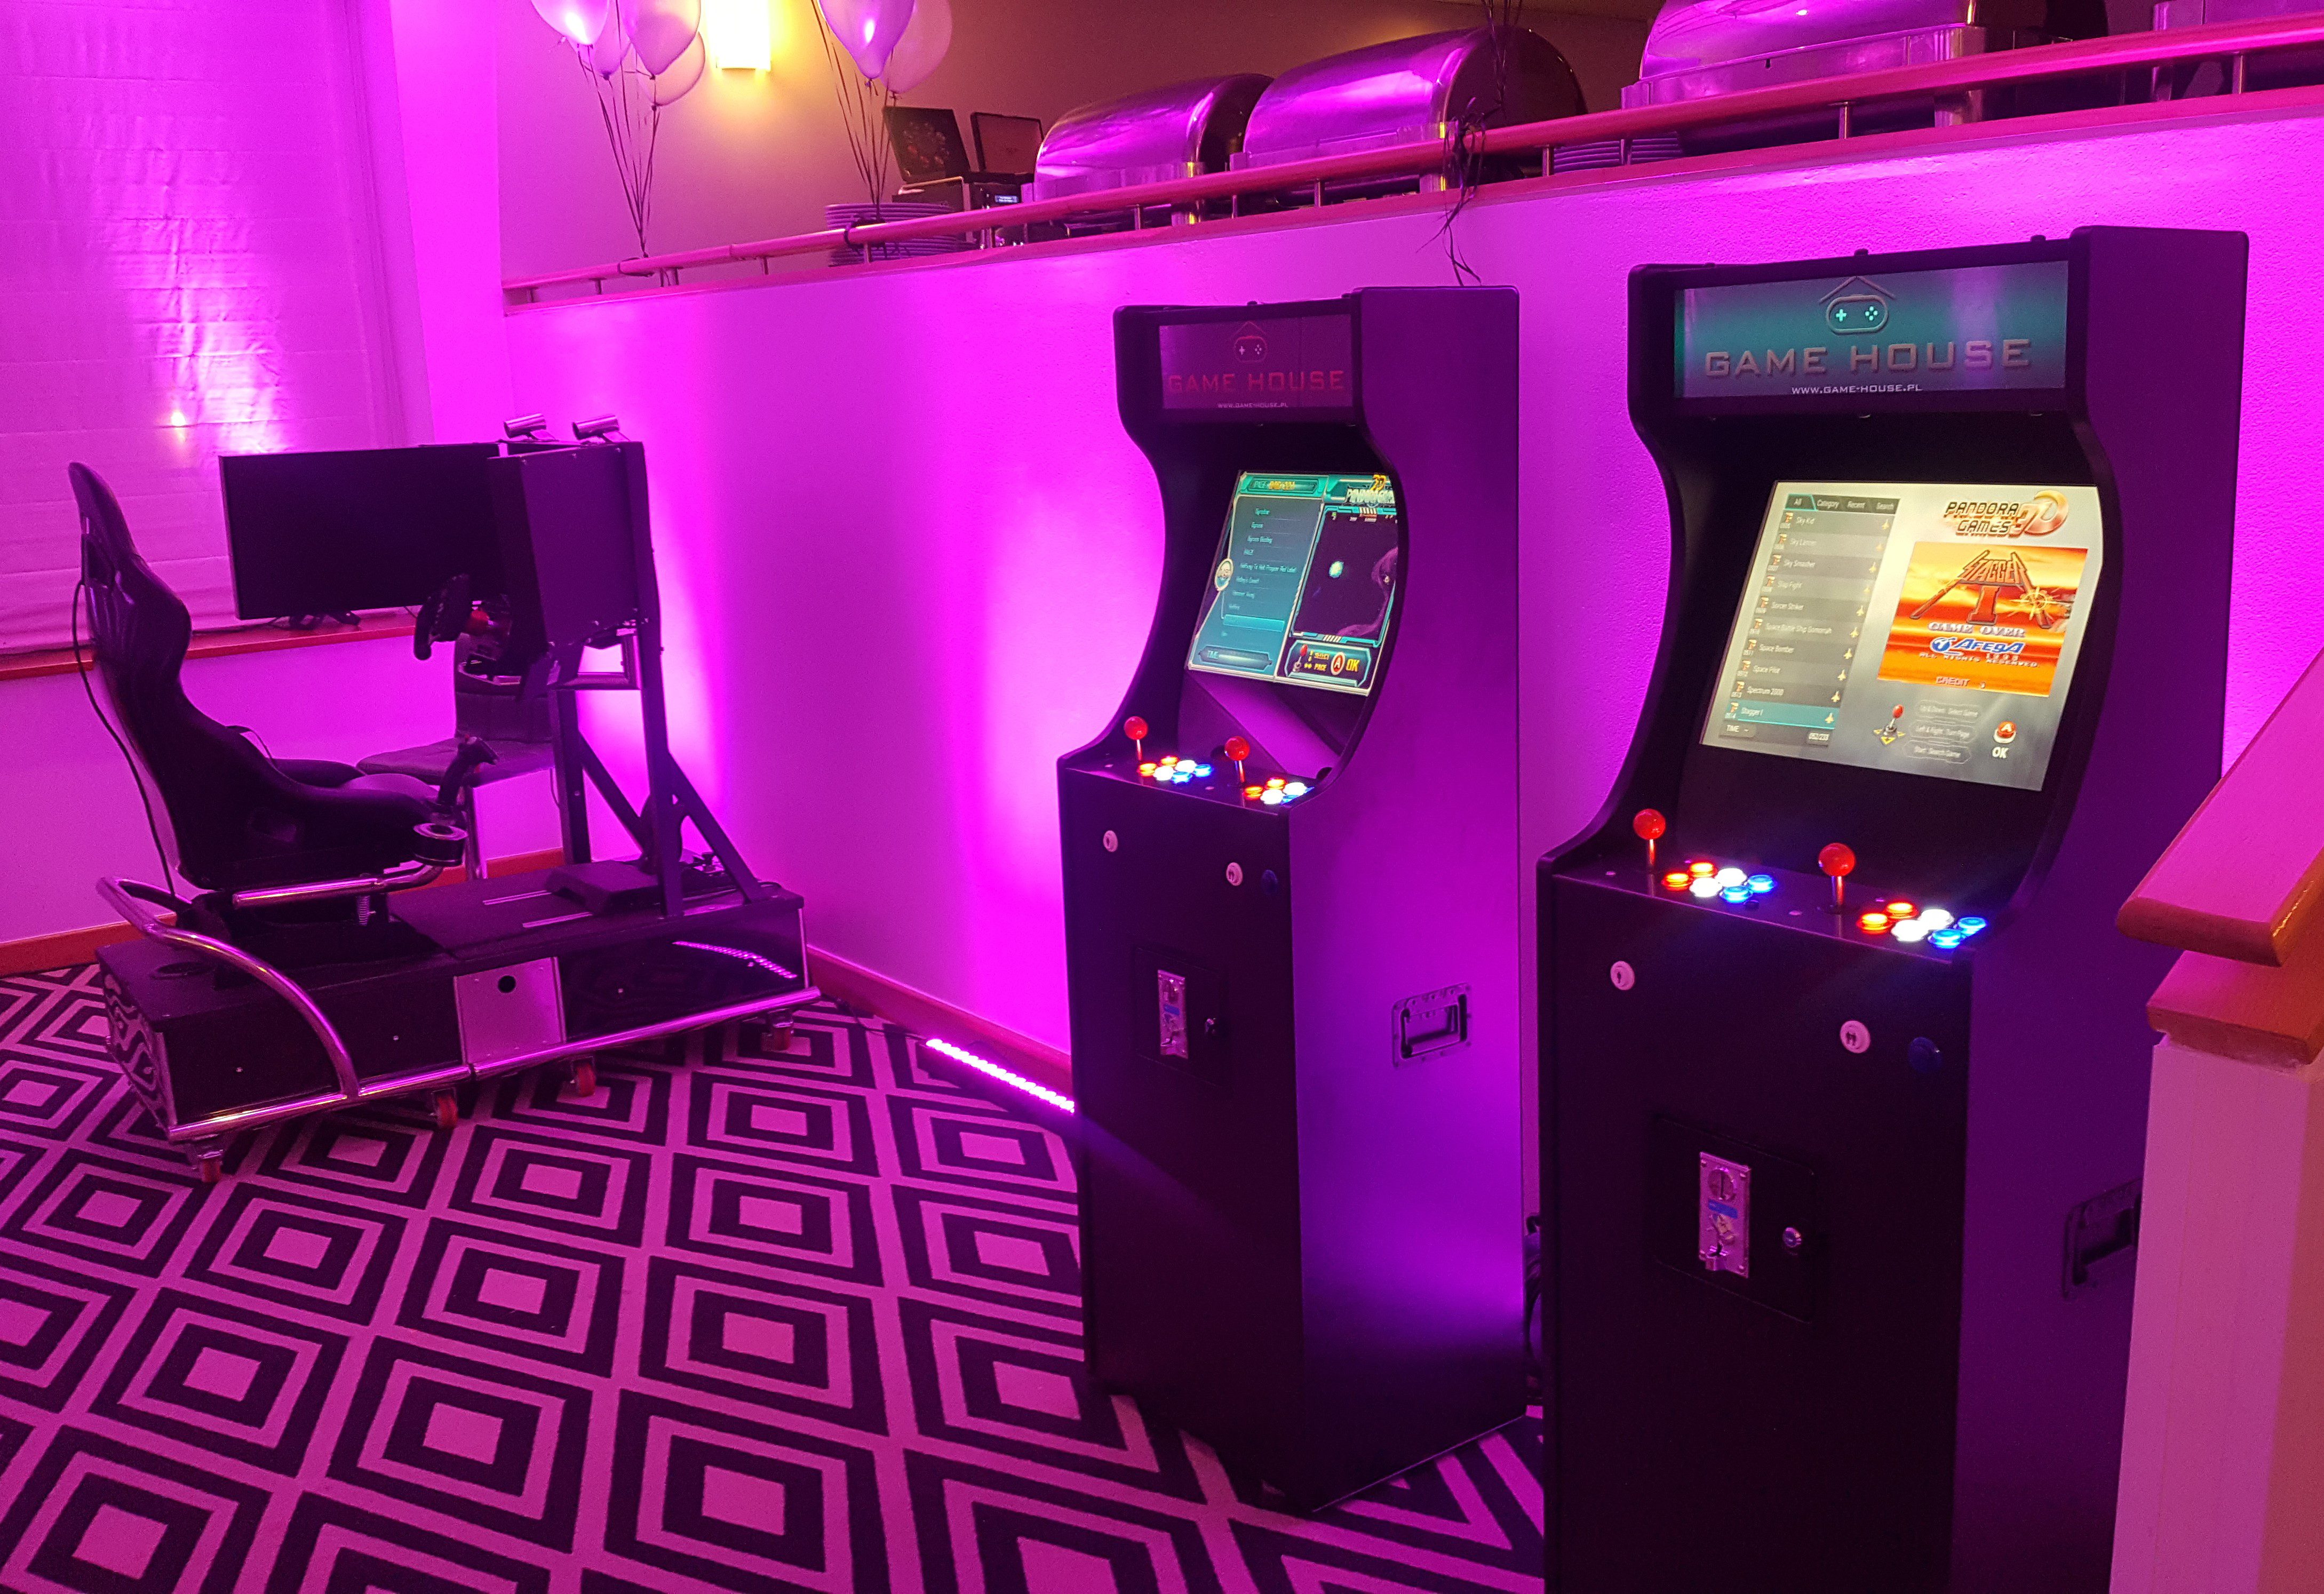 Dwa automaty do gier retro arcade i symulator rajdowy na evencie firmowym